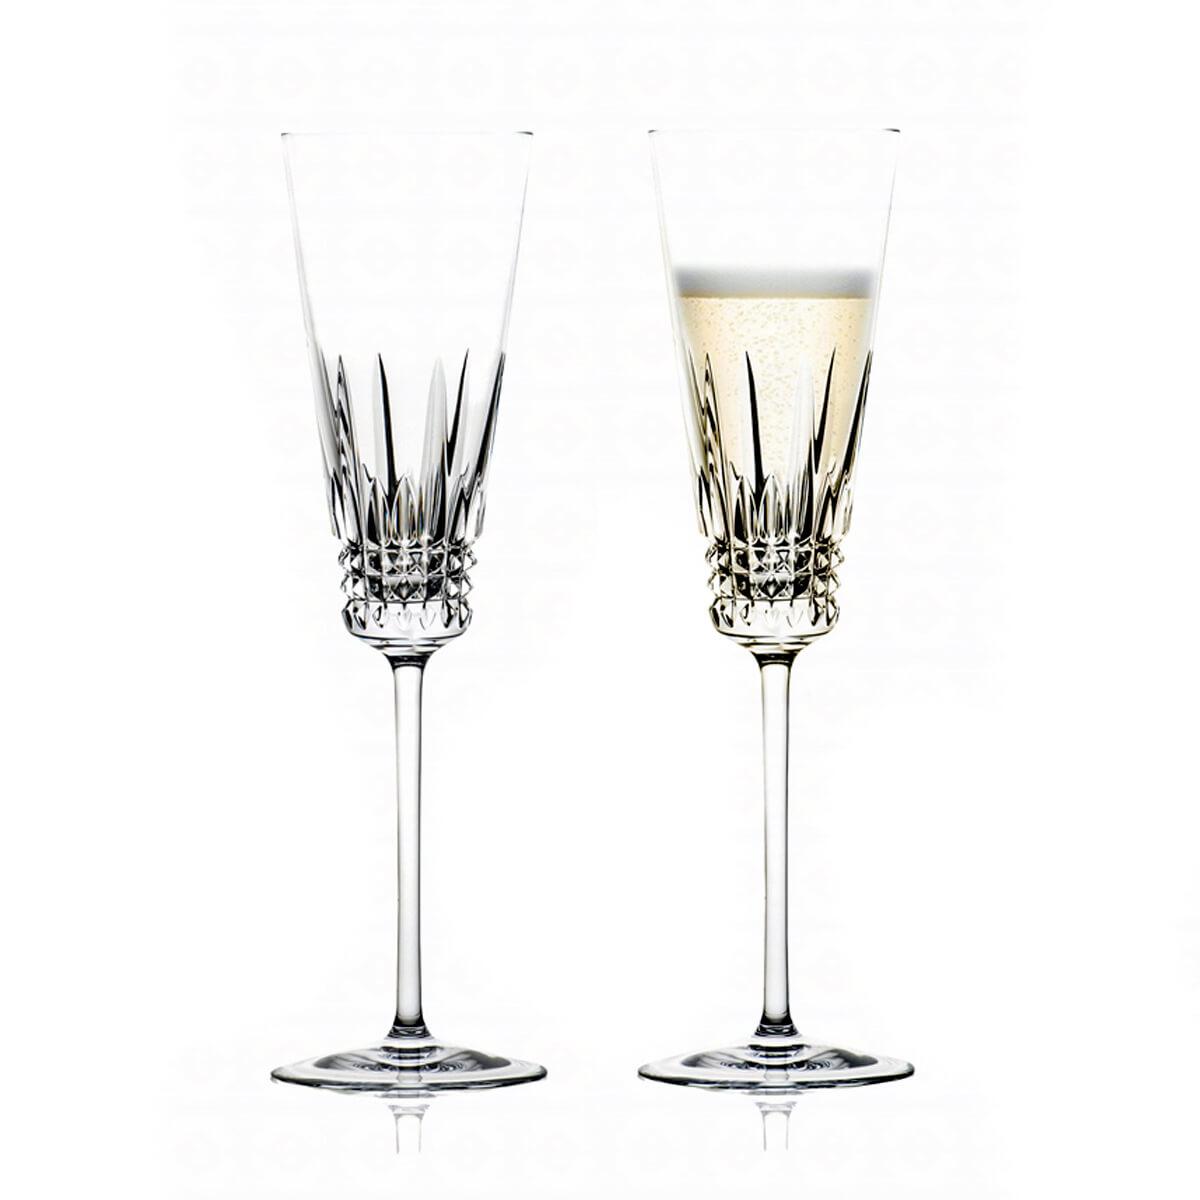 (一對價)230cc Rogaska 舞彩晶耀 - 香檳杯 結婚對杯 - MSA玻璃雕刻